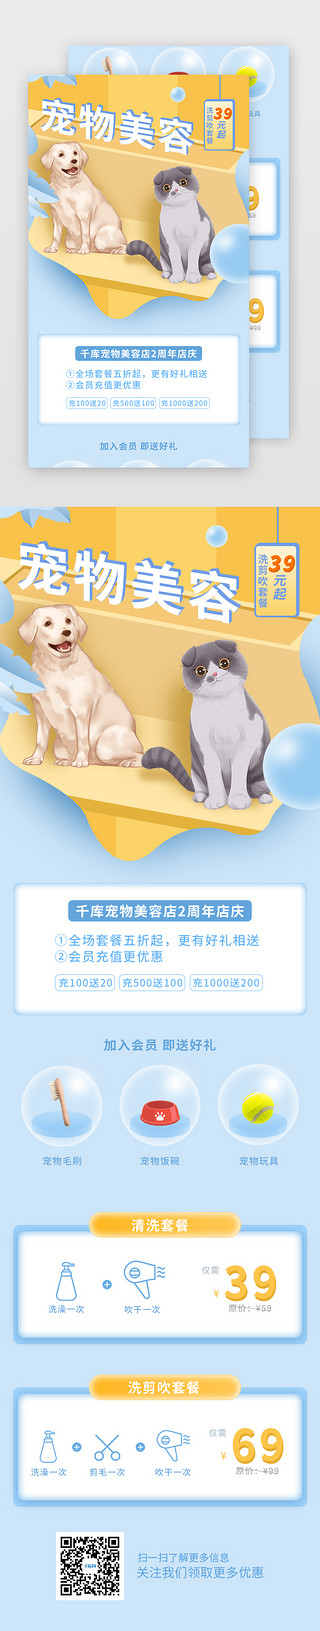 活动蓝色海报UI设计素材_淡蓝色清新宠物美容活动页H5